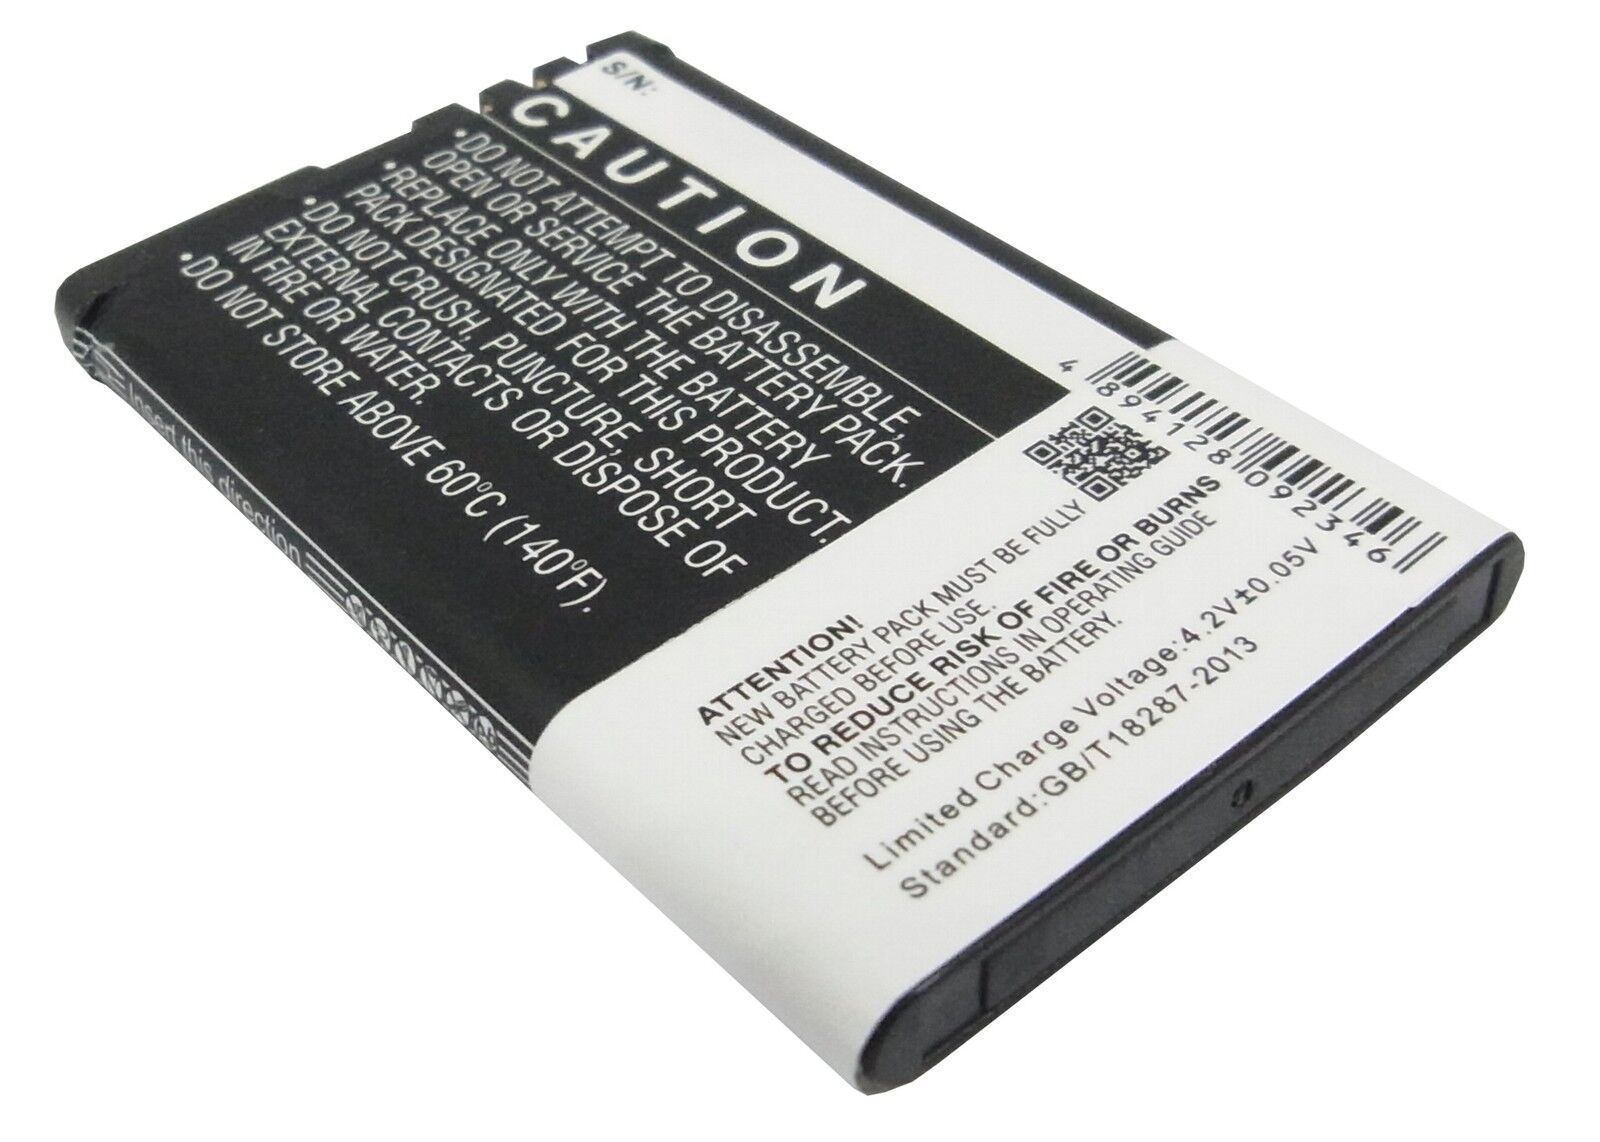 Batterie Siemens Gigaset SL930, SL930A, SL930H v30145-k1310-x456 3.7v RoHS(compatible)